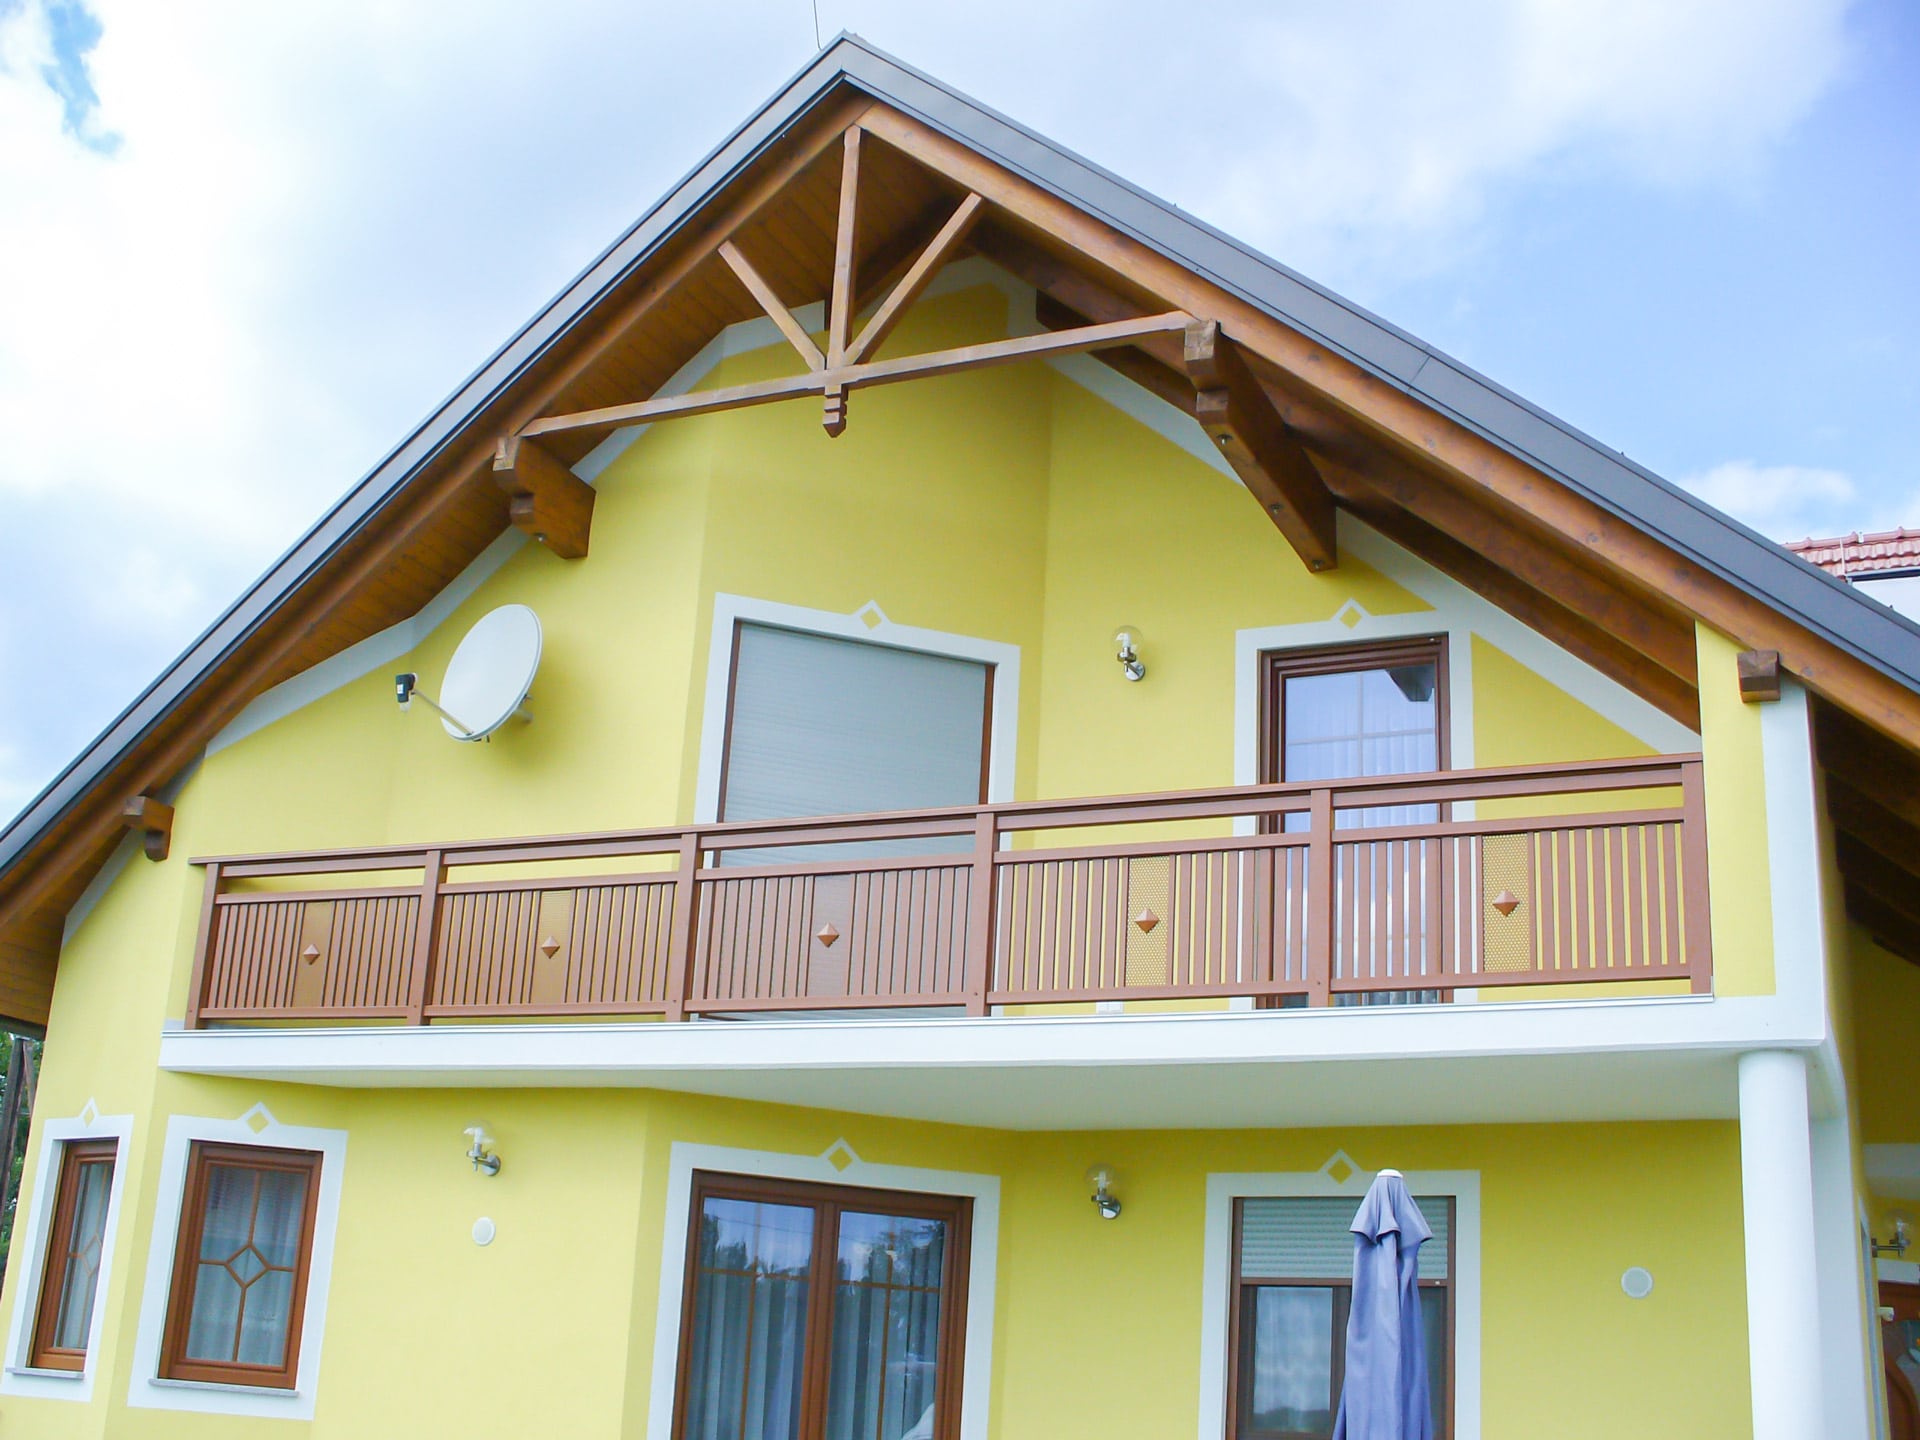 Krieglach 13 a | Aluminium Balkon braun mit Lochblech & Knopf bei Haus gelb mit Spitzdach | Svoboda